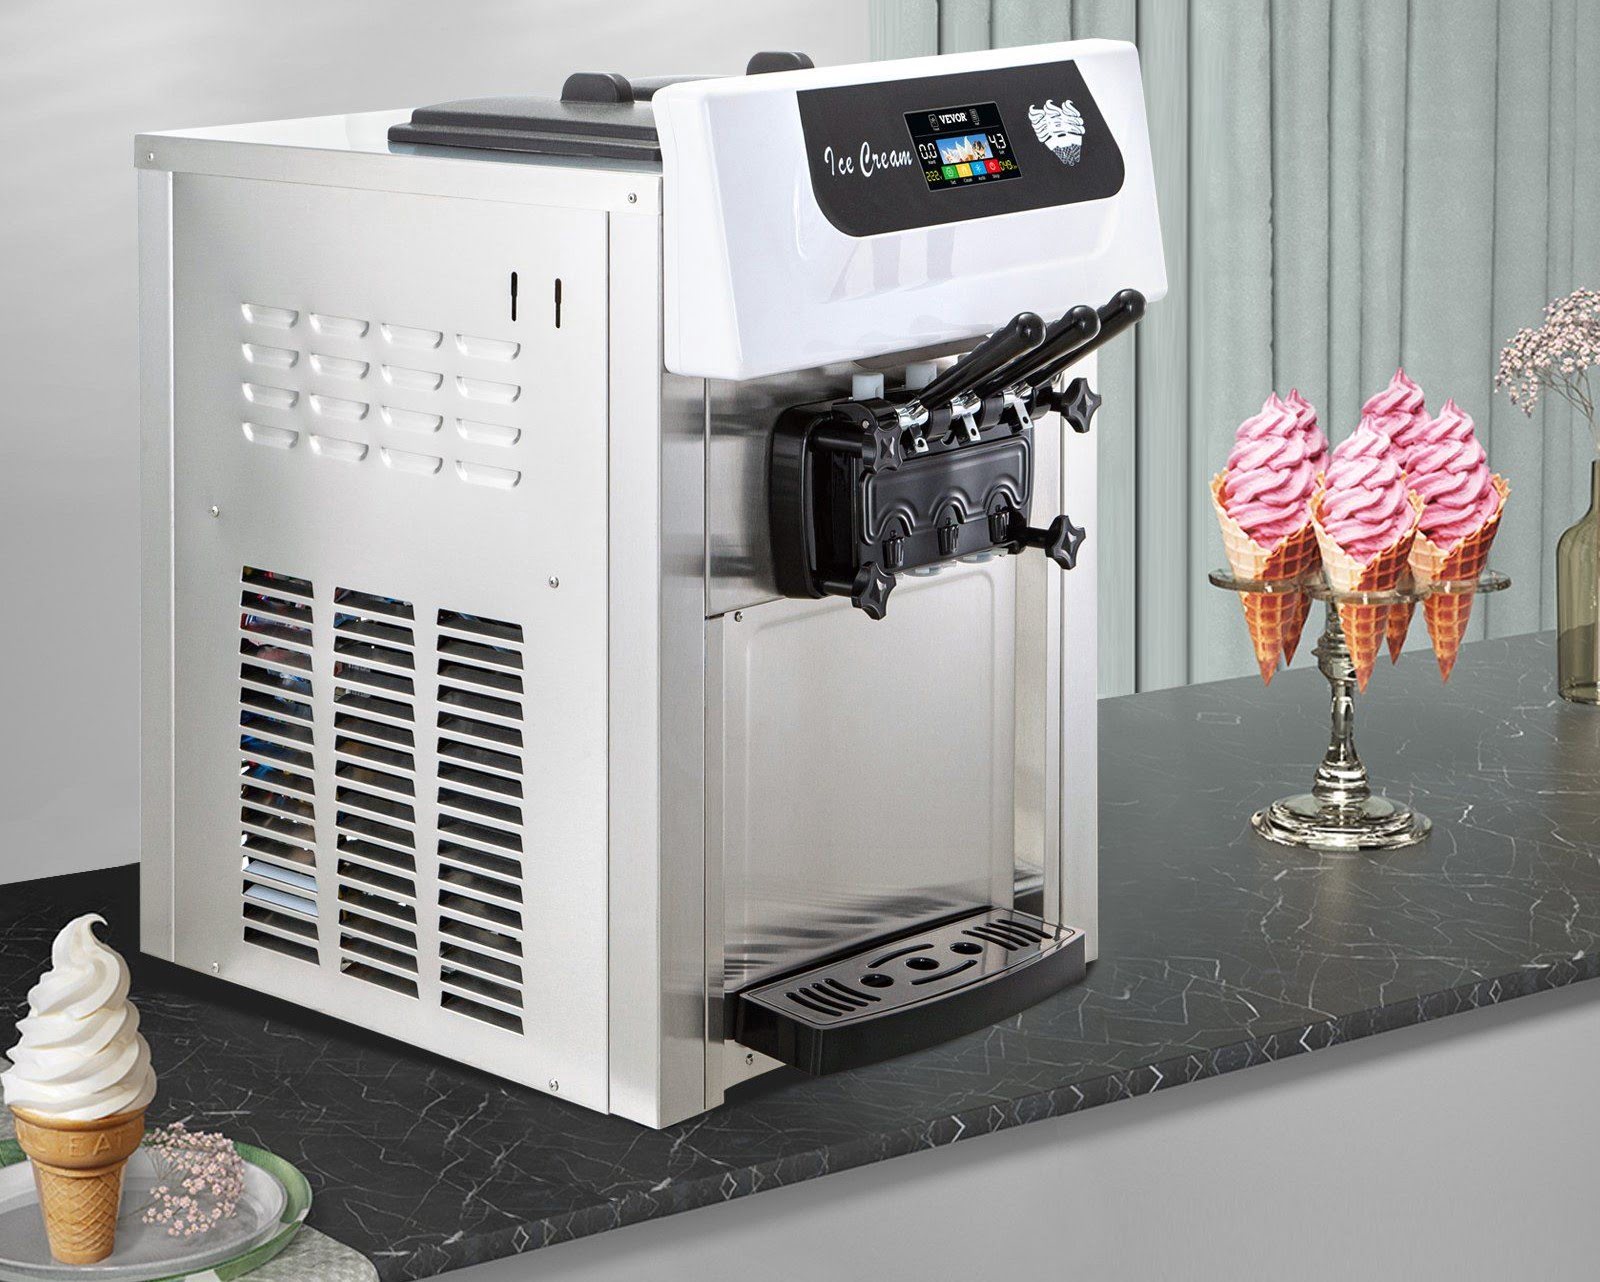 Absolute Frozen Yogurt and Ice Cream Countertop Machine